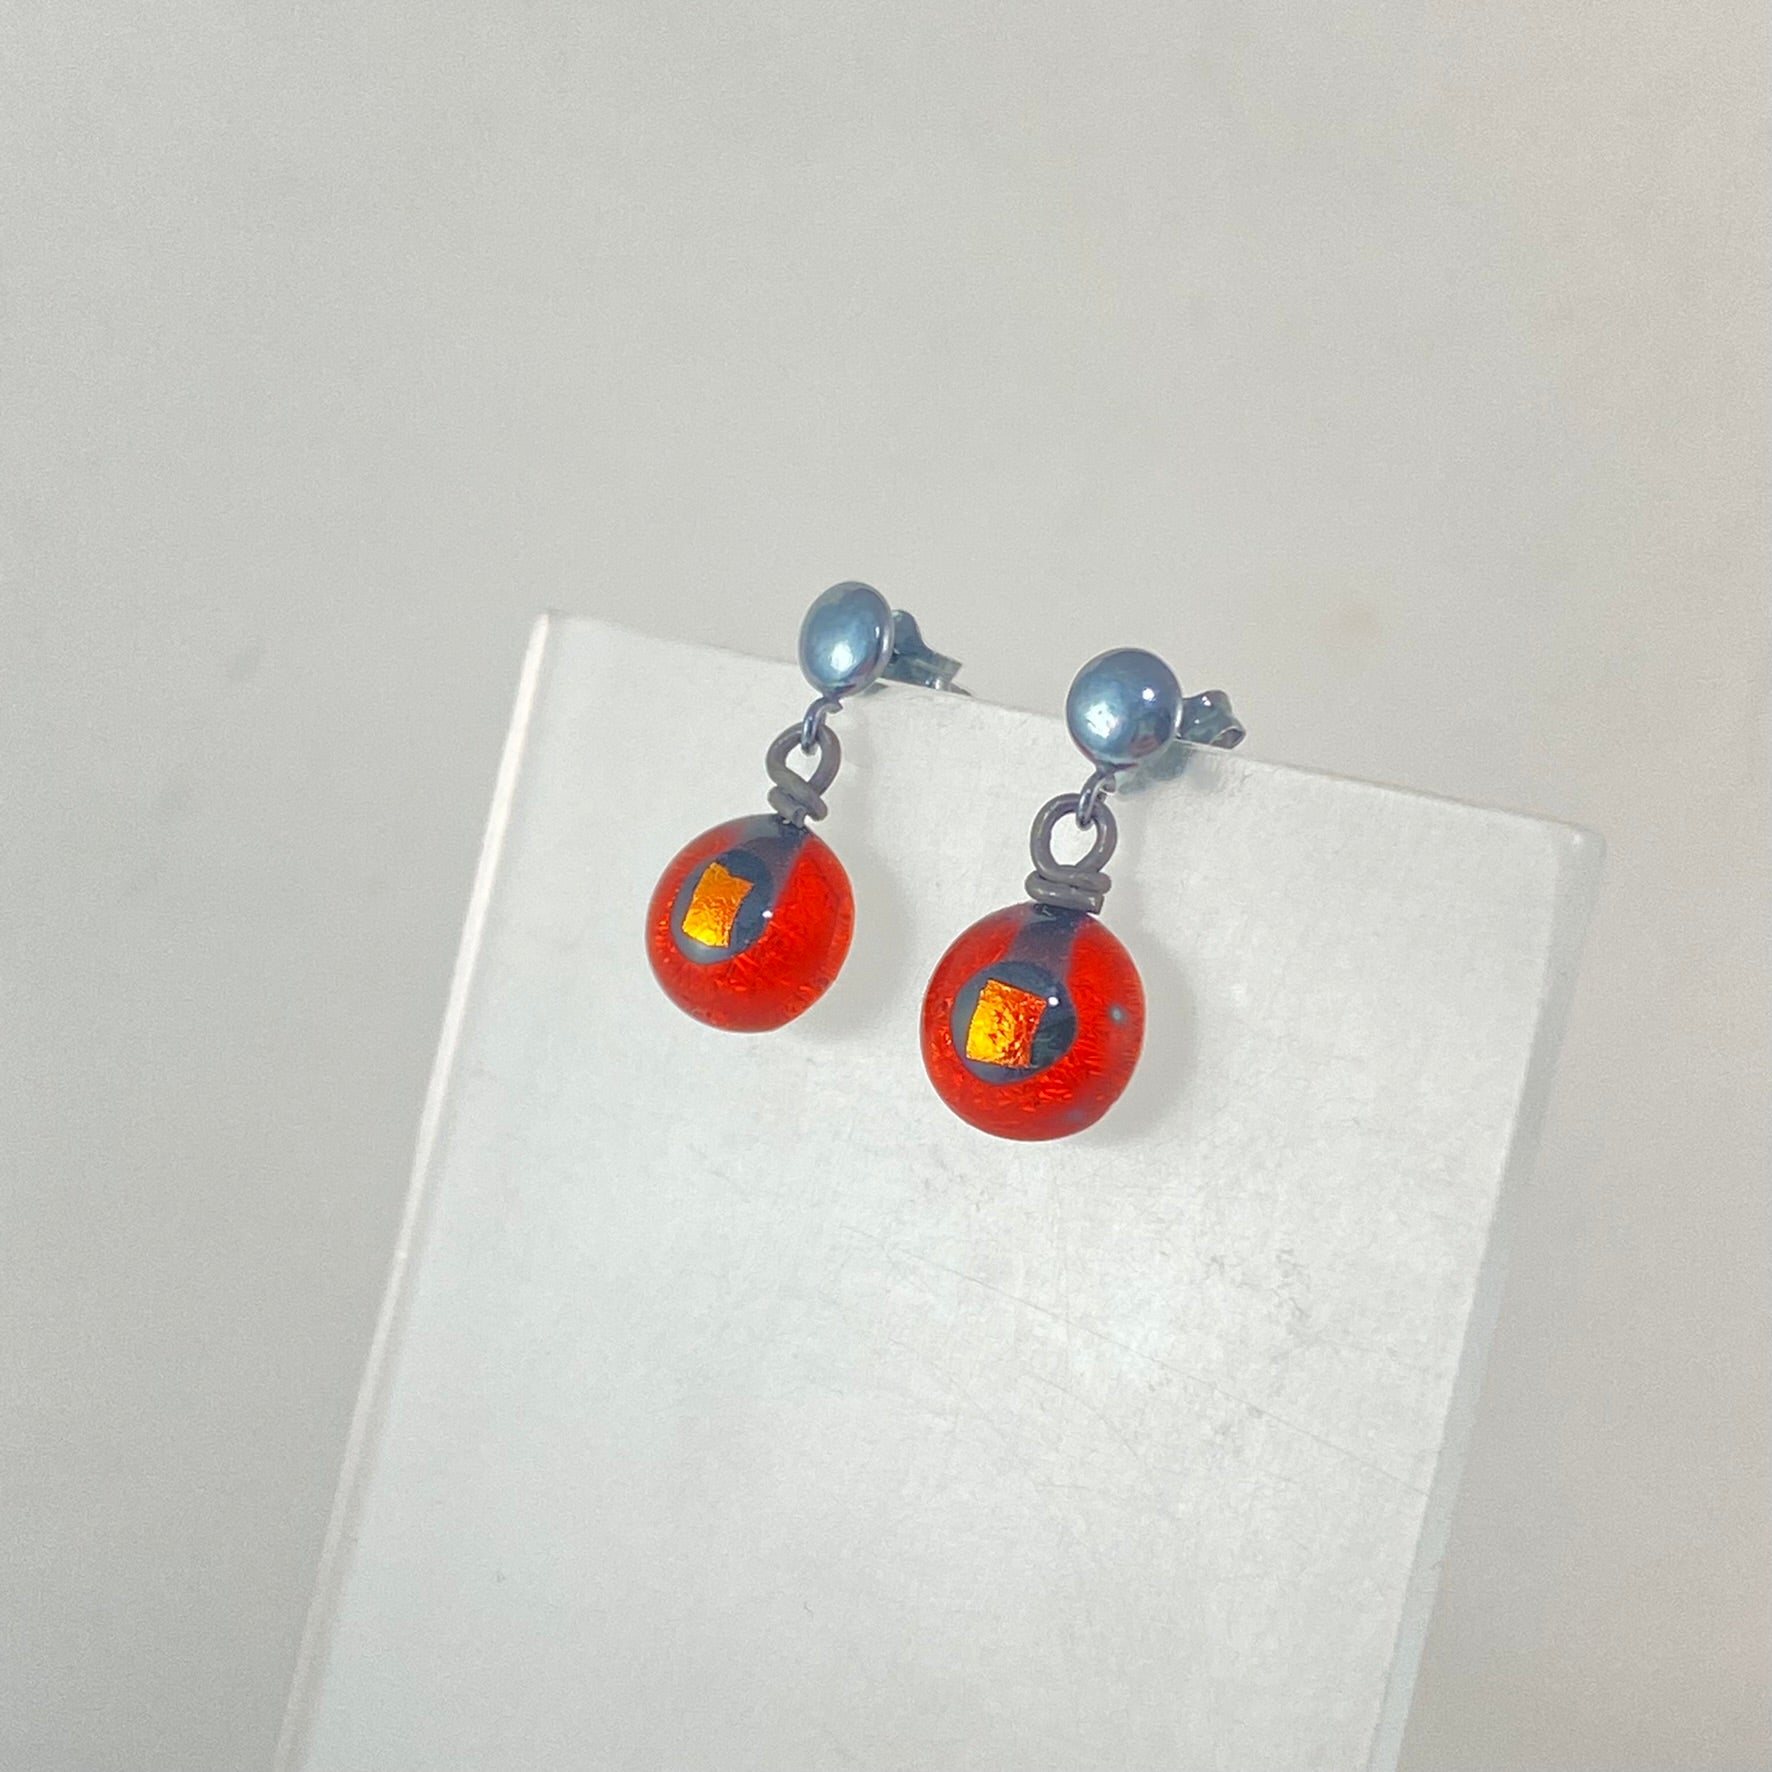 Oxidized Post Space Ball Earrings in Orange